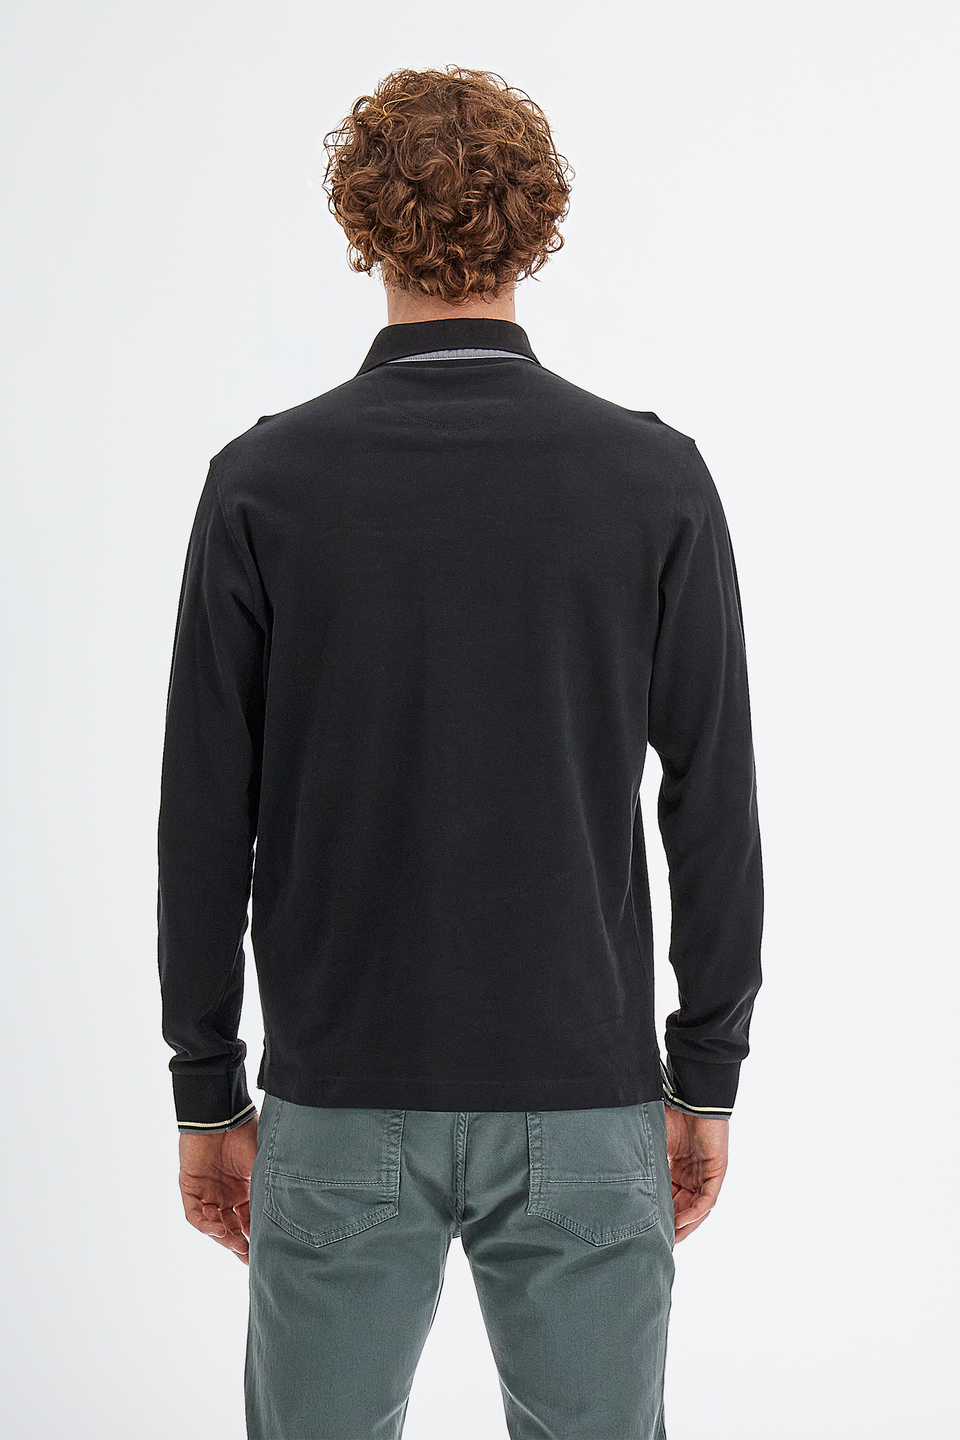 Polo da uomo in cotone jersey maniche lunghe slim fit | La Martina - Official Online Shop